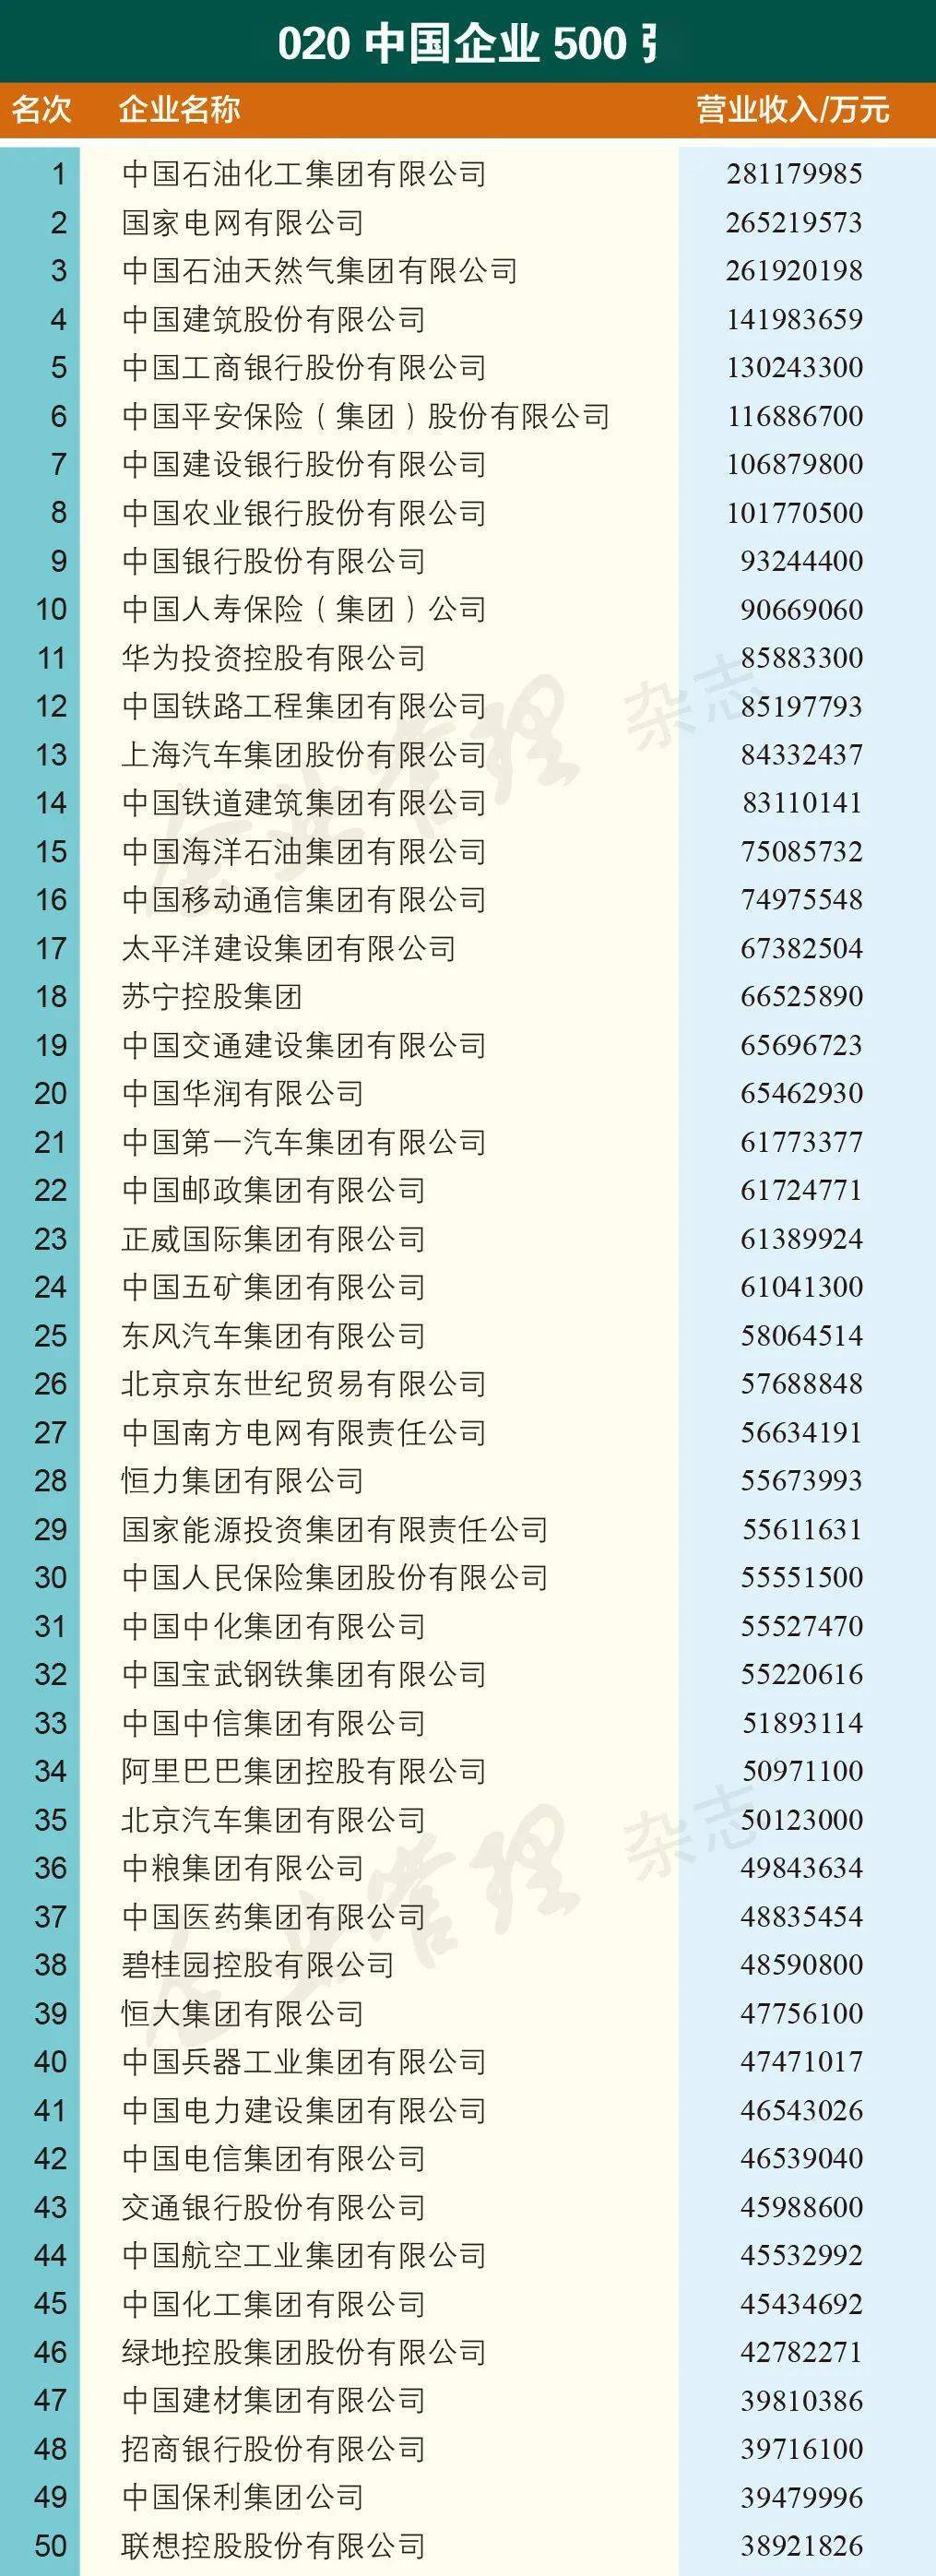 2020中国排名500强_2020中国企业500强发布!中石化位列榜首